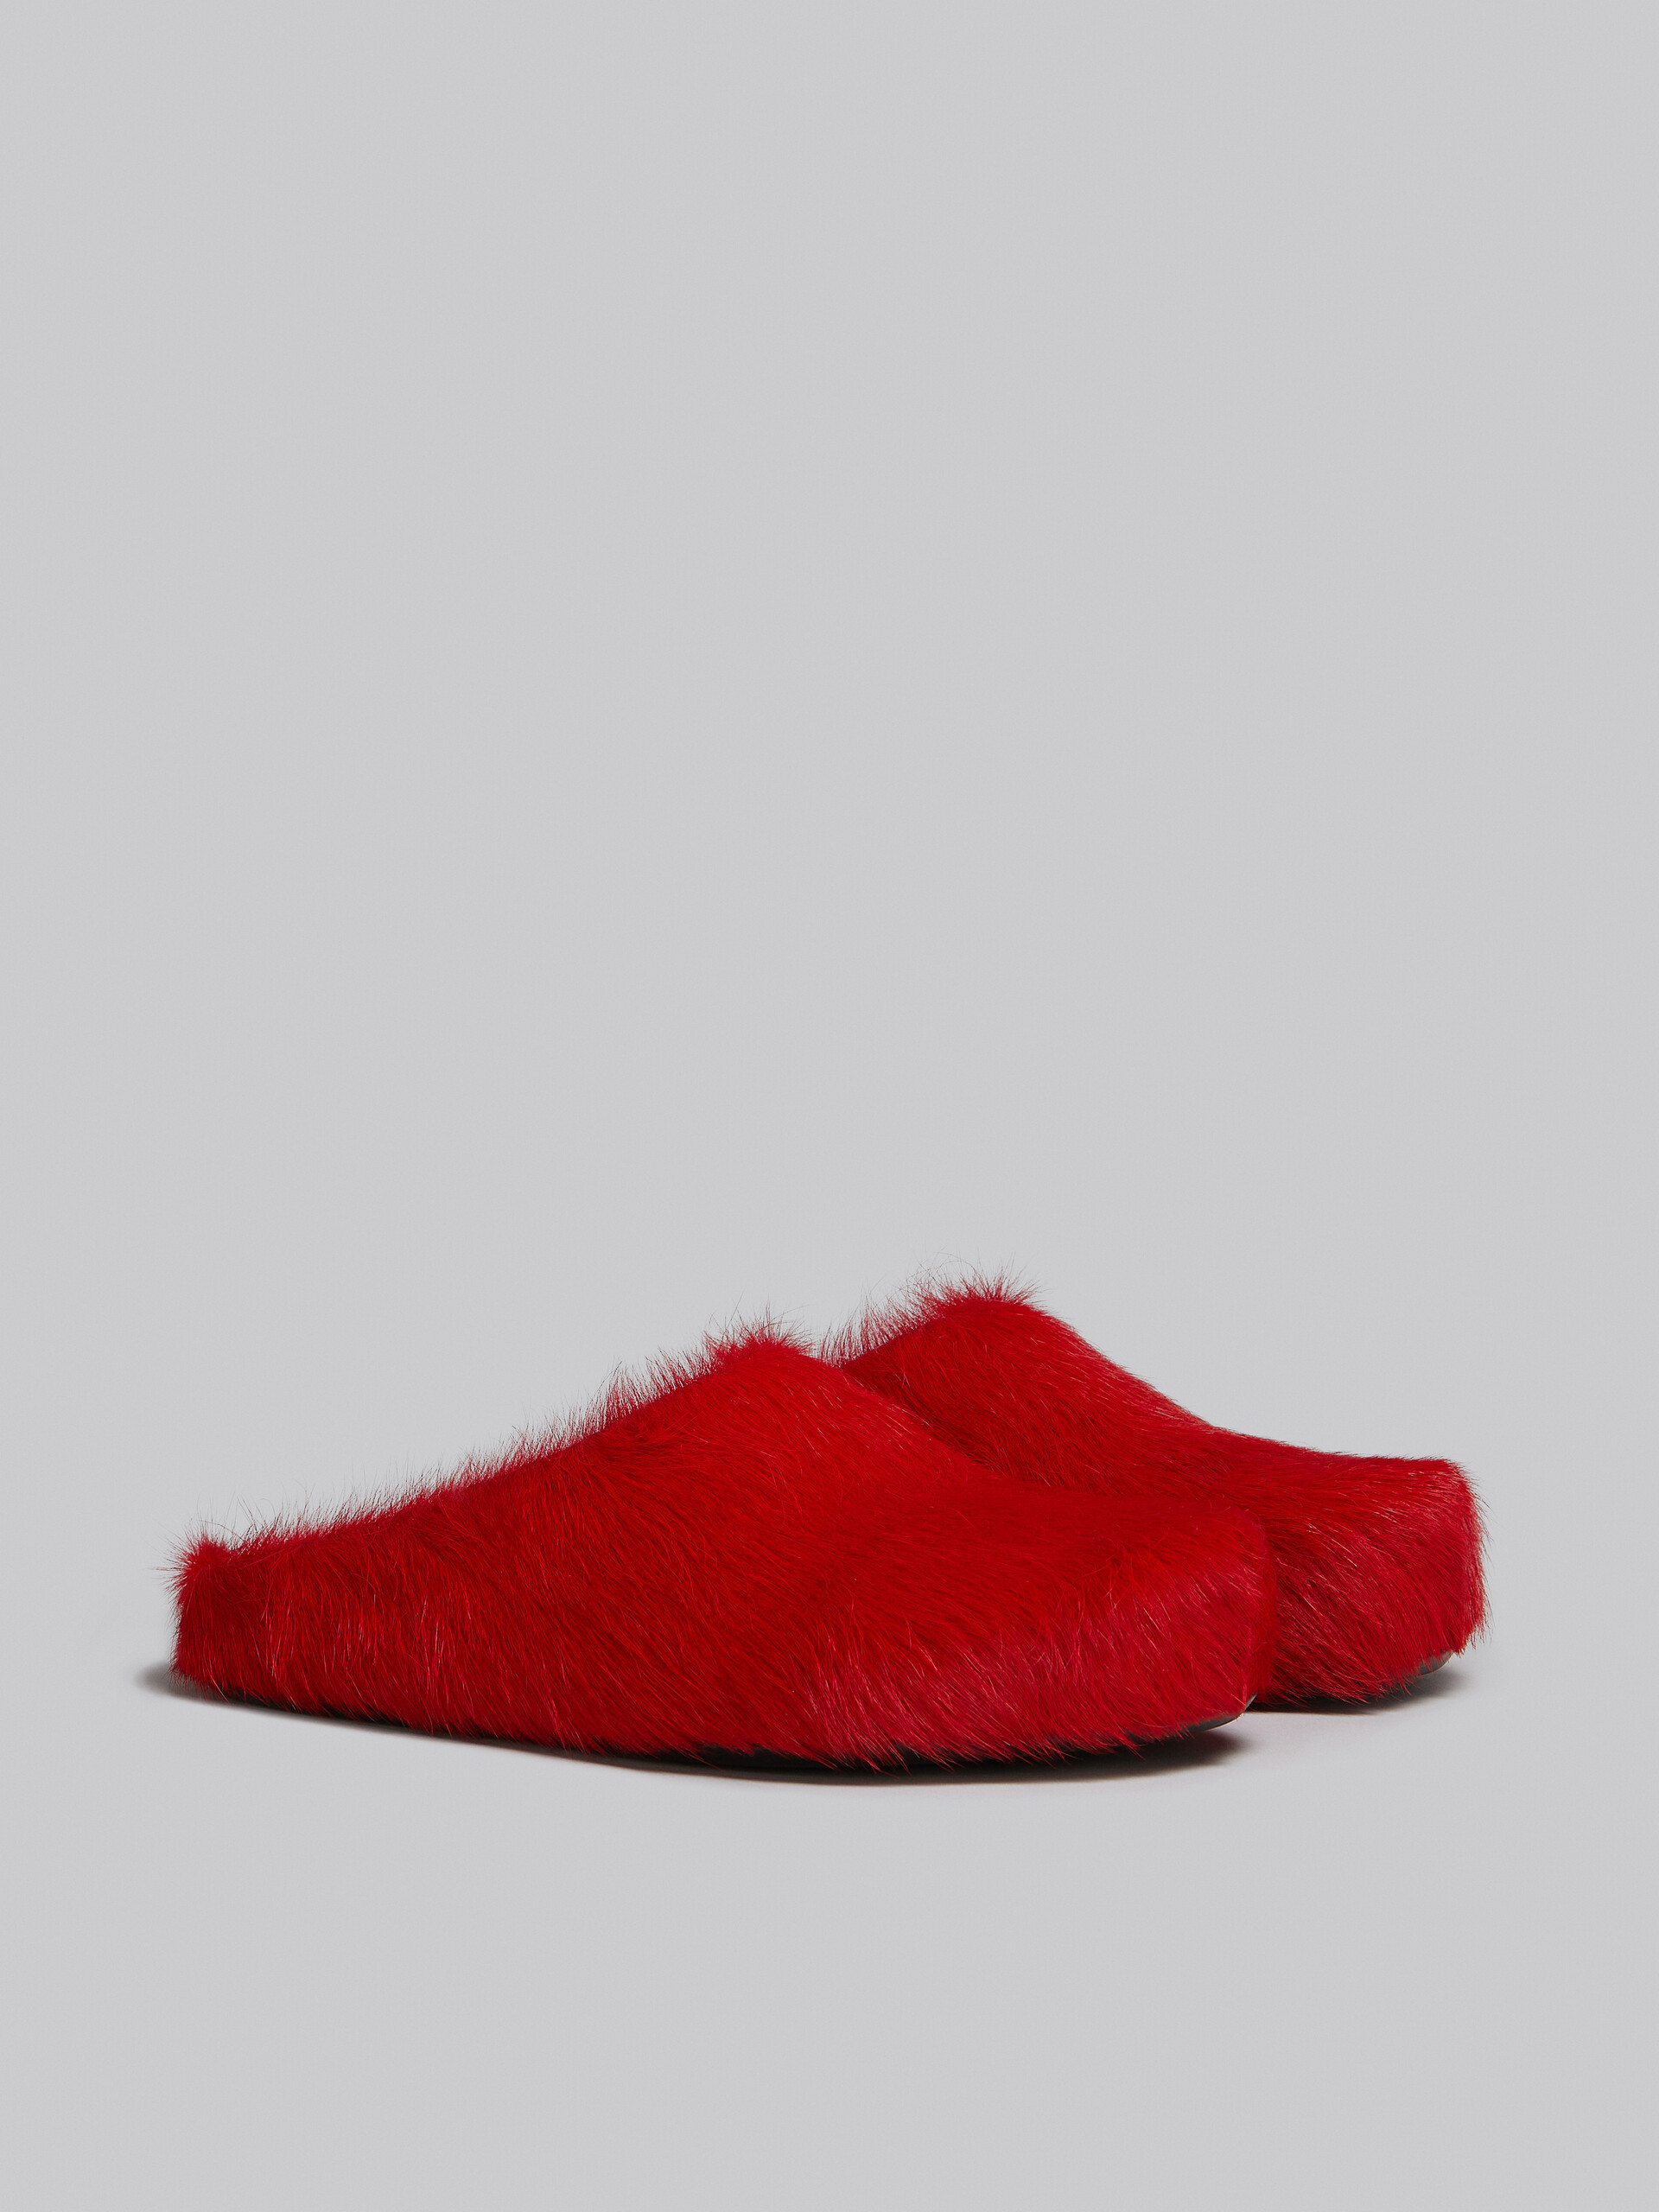 Red long-hair calfskin Fussbett sabot - Clogs - Image 2